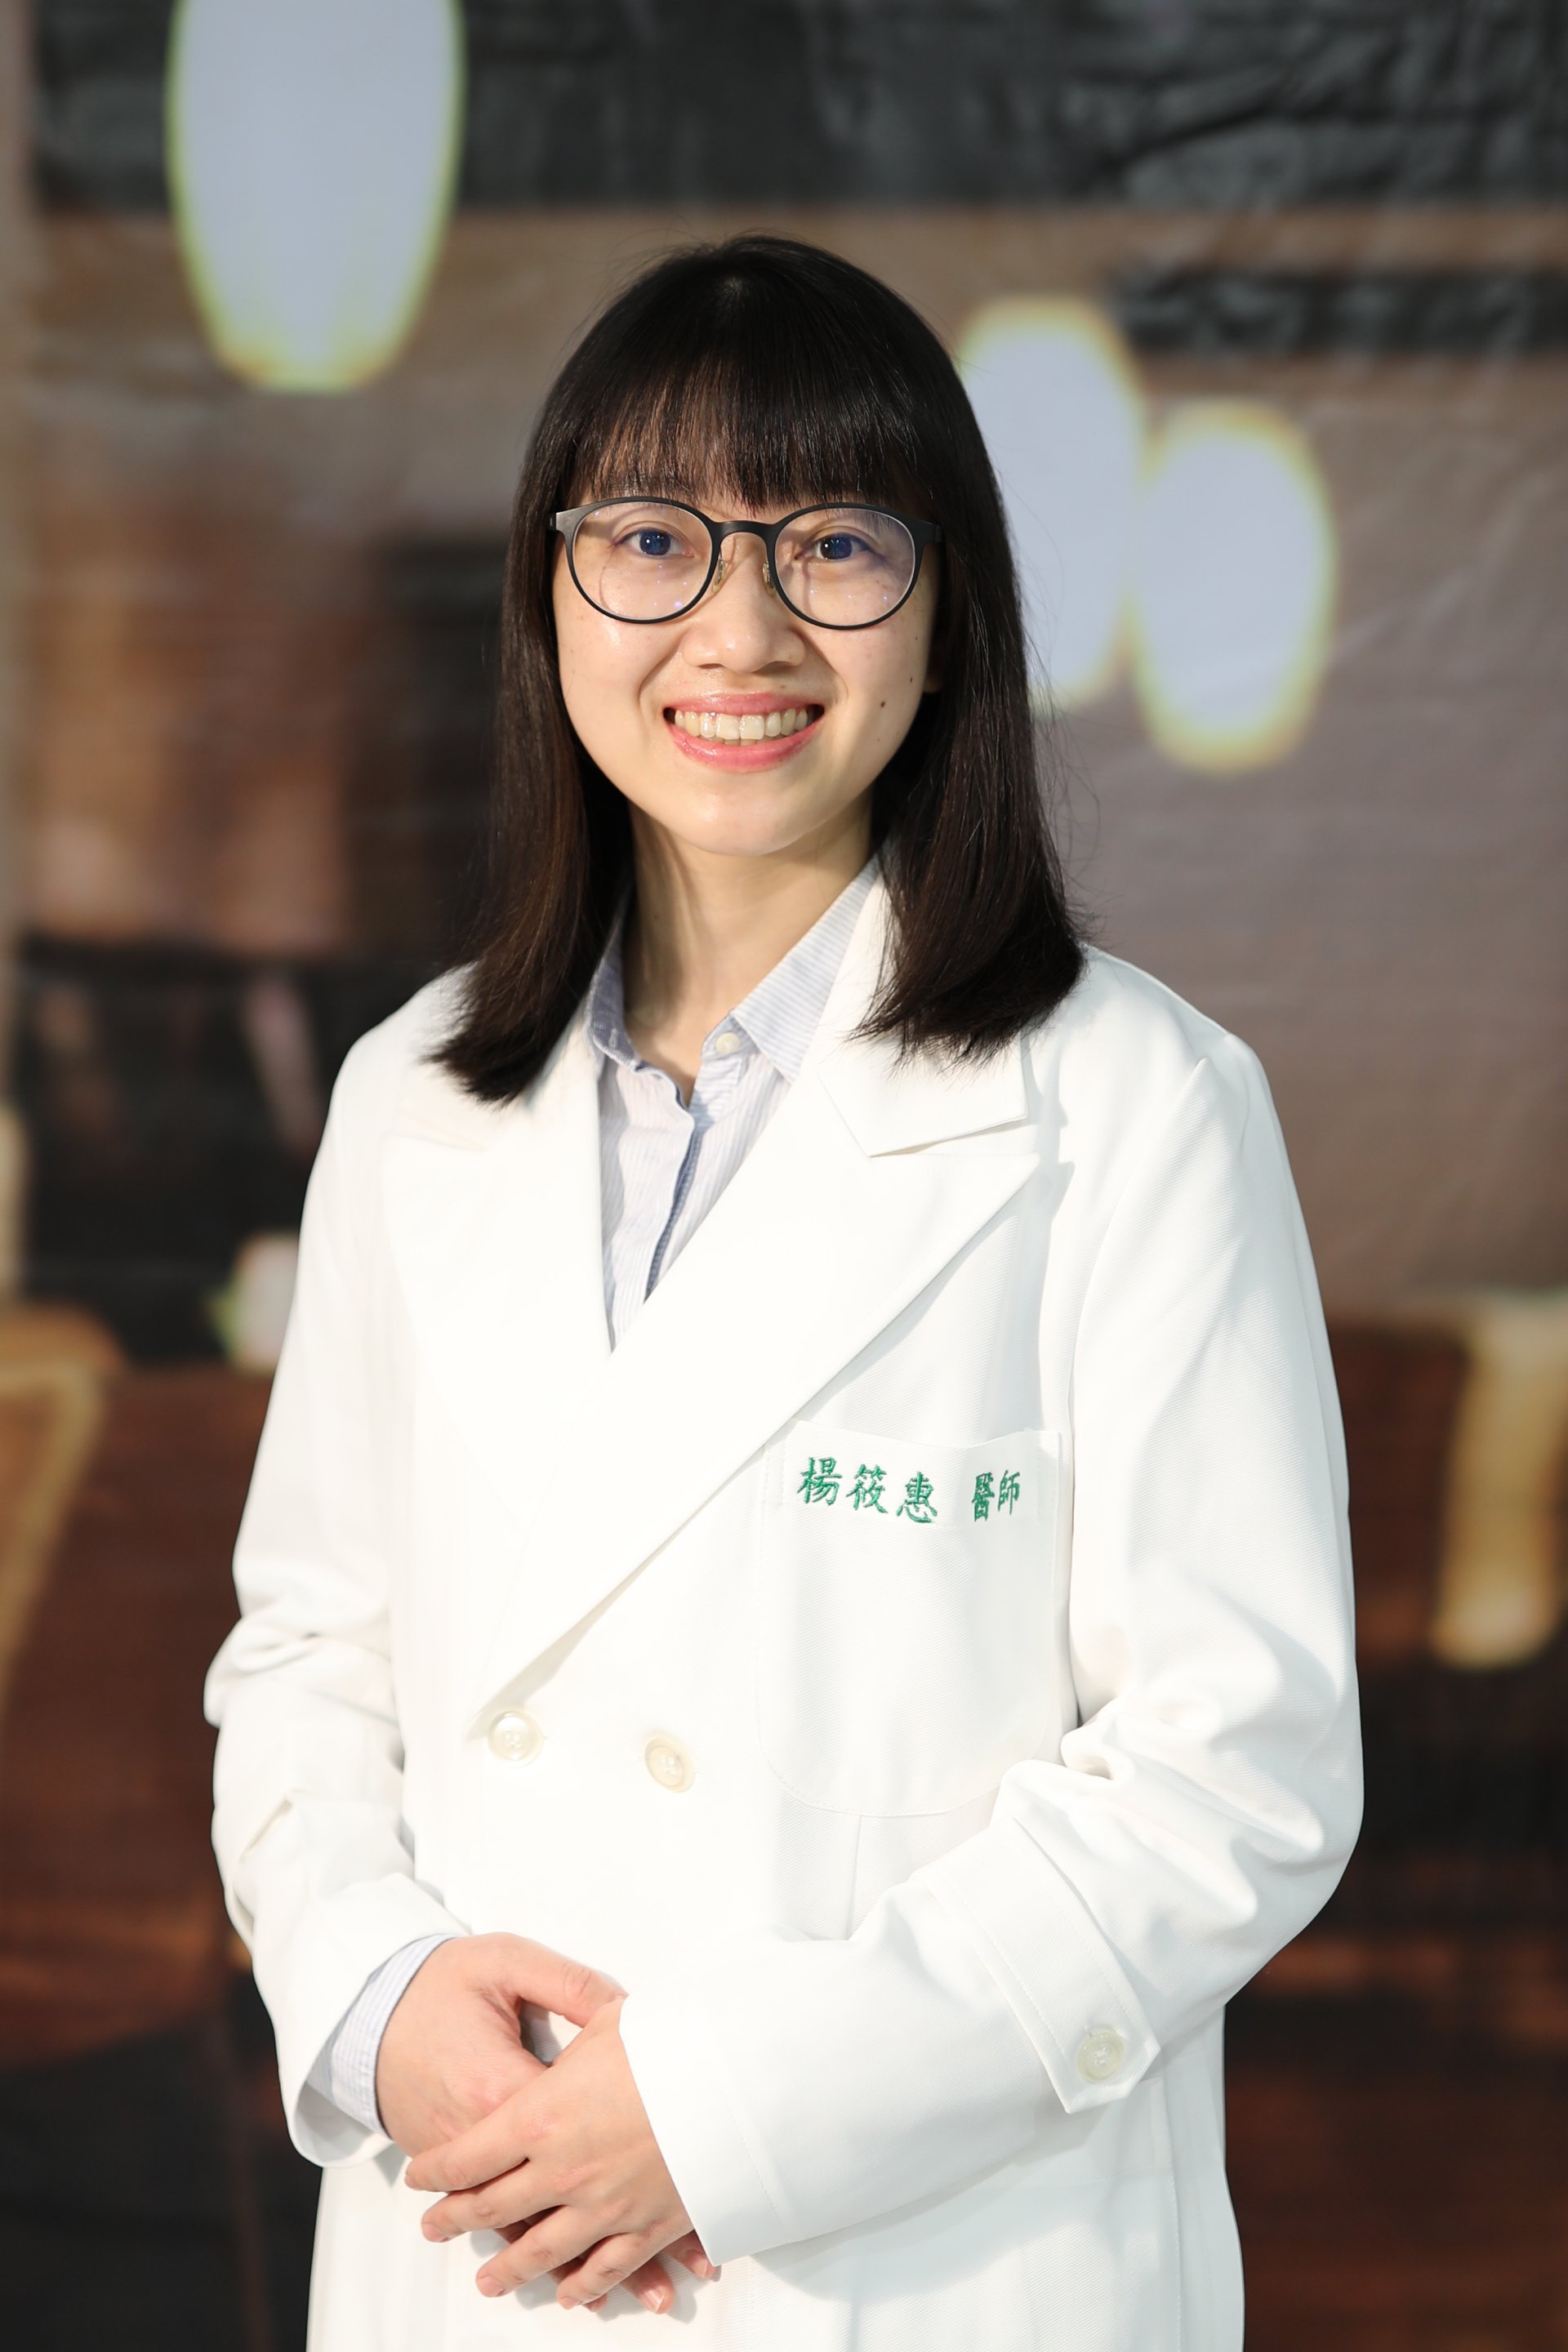 花蓮慈院小兒外科主治醫師楊筱惠醫師是花東地區極少數的小兒外科醫師，承擔起守護東部孩童健康的責任。